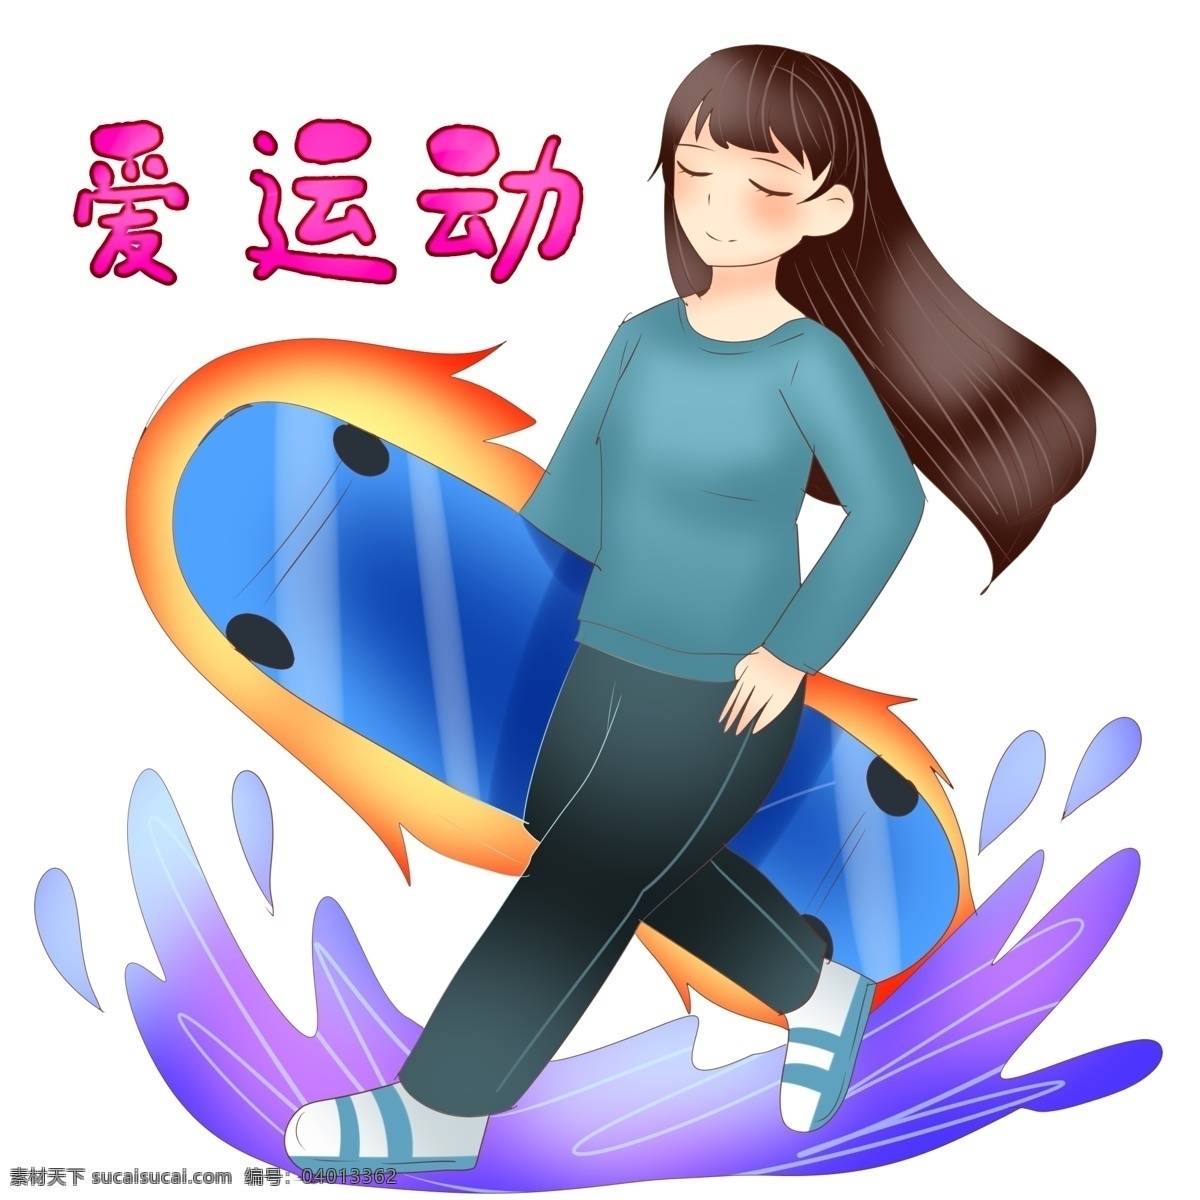 滑板 健身 运动 插画 滑板的运动 蓝色的滑板 卡通插画 运动插画 健身运动 锻炼身体 活动筋骨